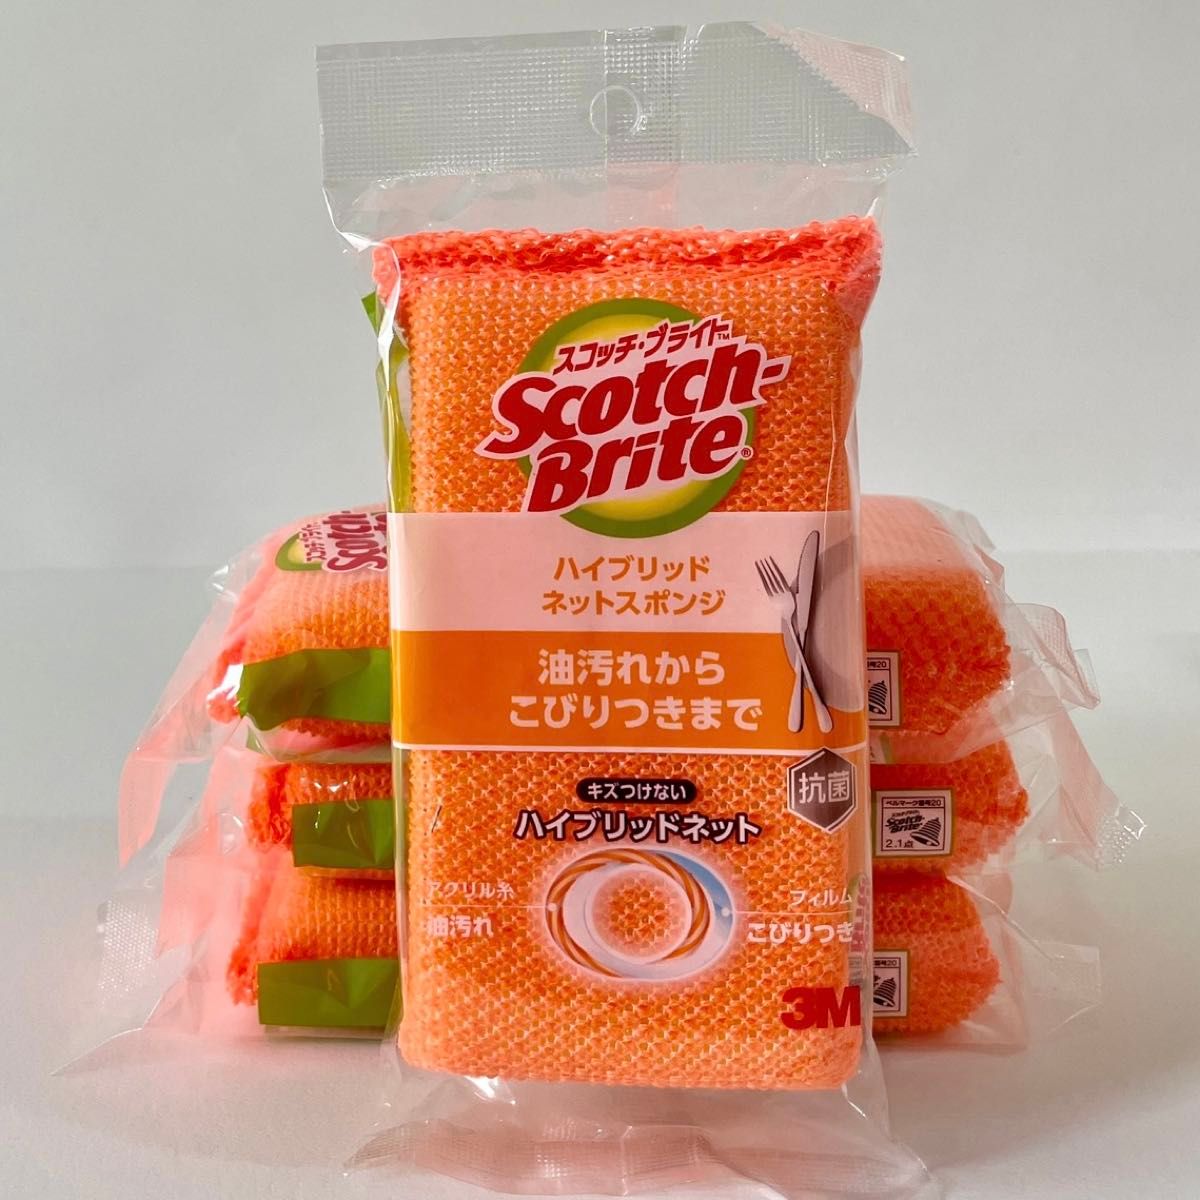 【スコッチ・ブライト】ハイブリッドネットスポンジ(オレンジ) ×4セット